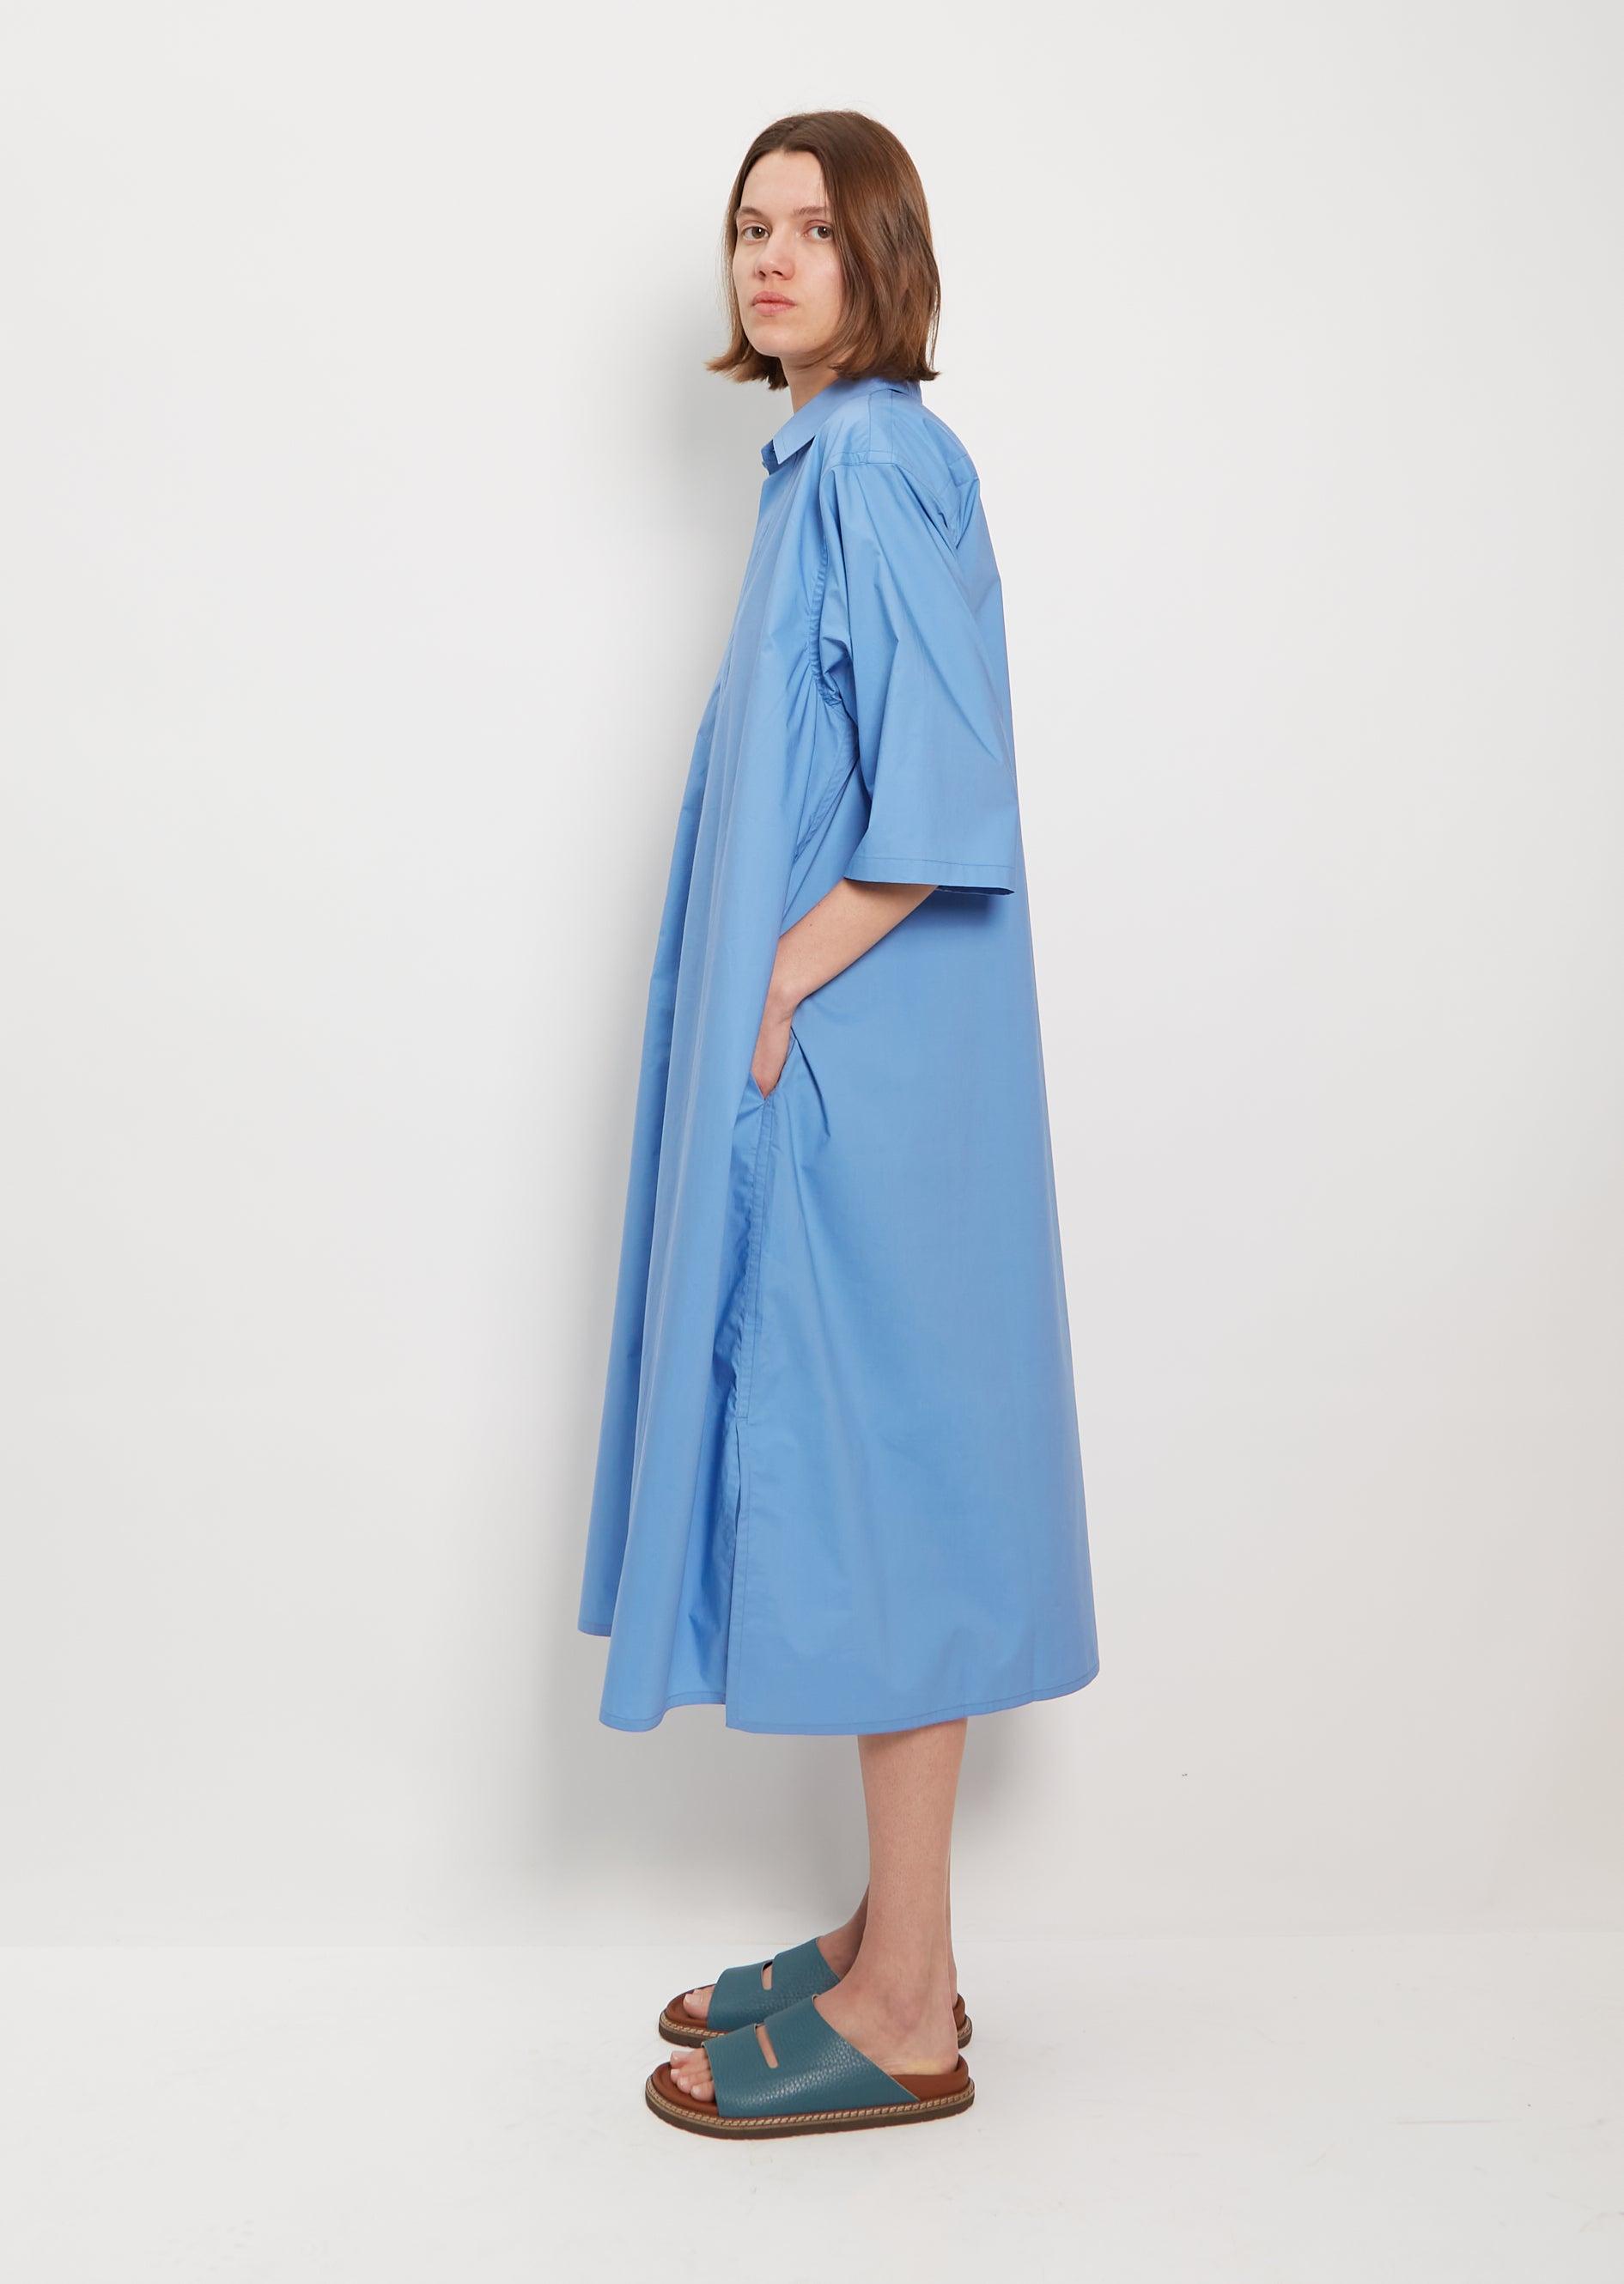 Sofie D'Hoore Dillion Cotton Shirt Dress in Blue | Lyst